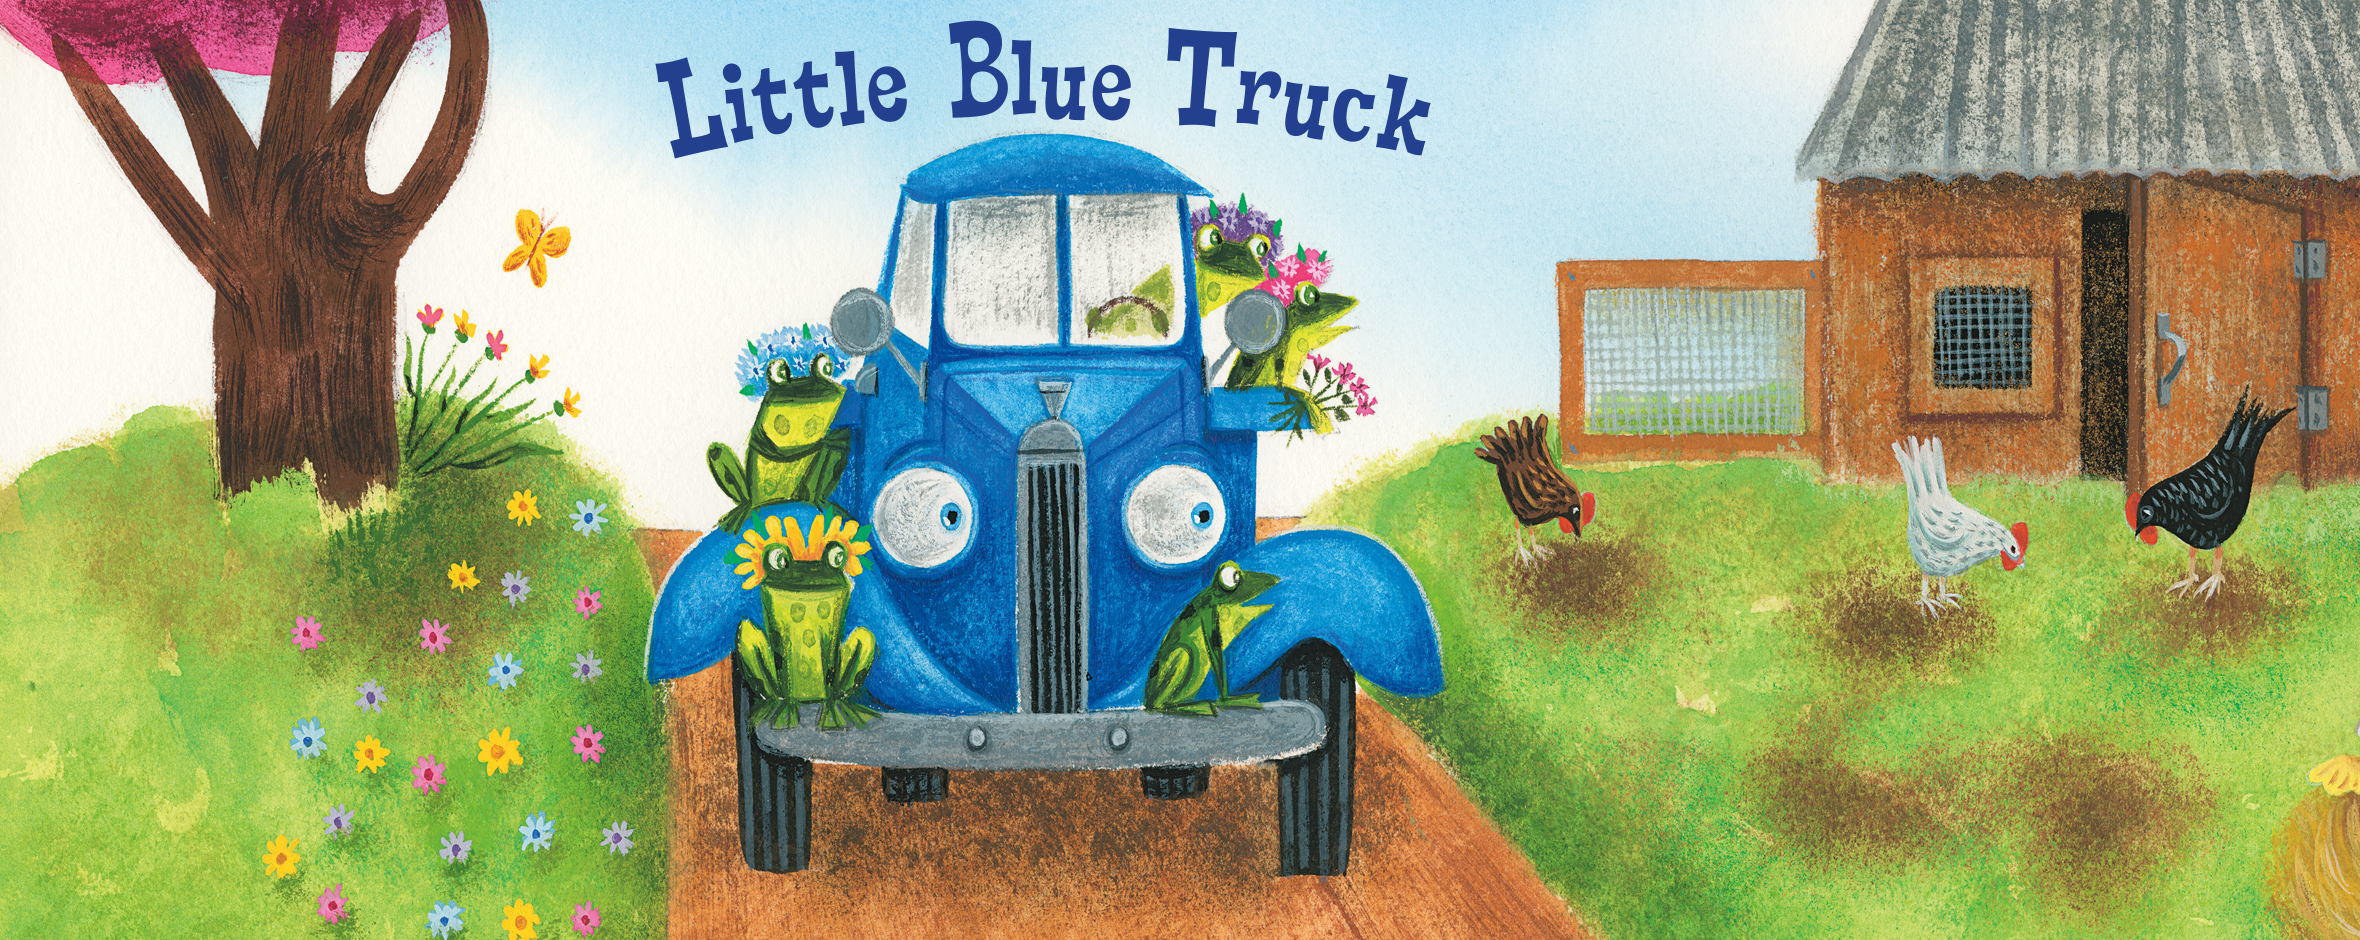 Little Blue Truck.